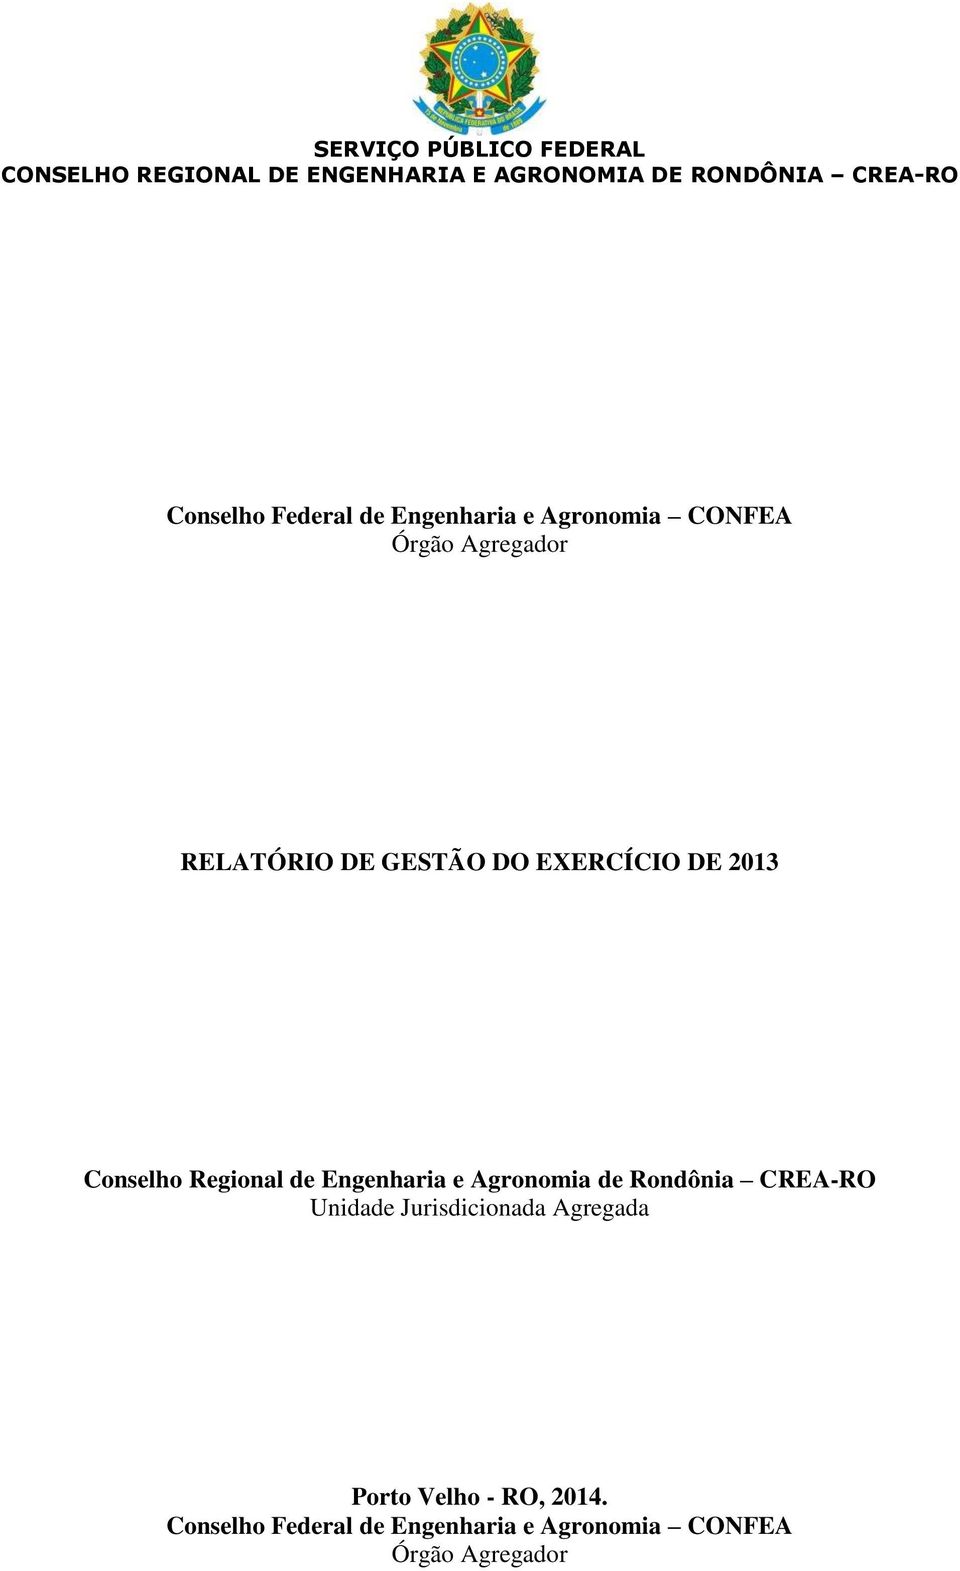 EXERCÍCIO DE 2013 Conselho Regional de Engenharia e Agronomia de Rondônia CREA-RO Unidade